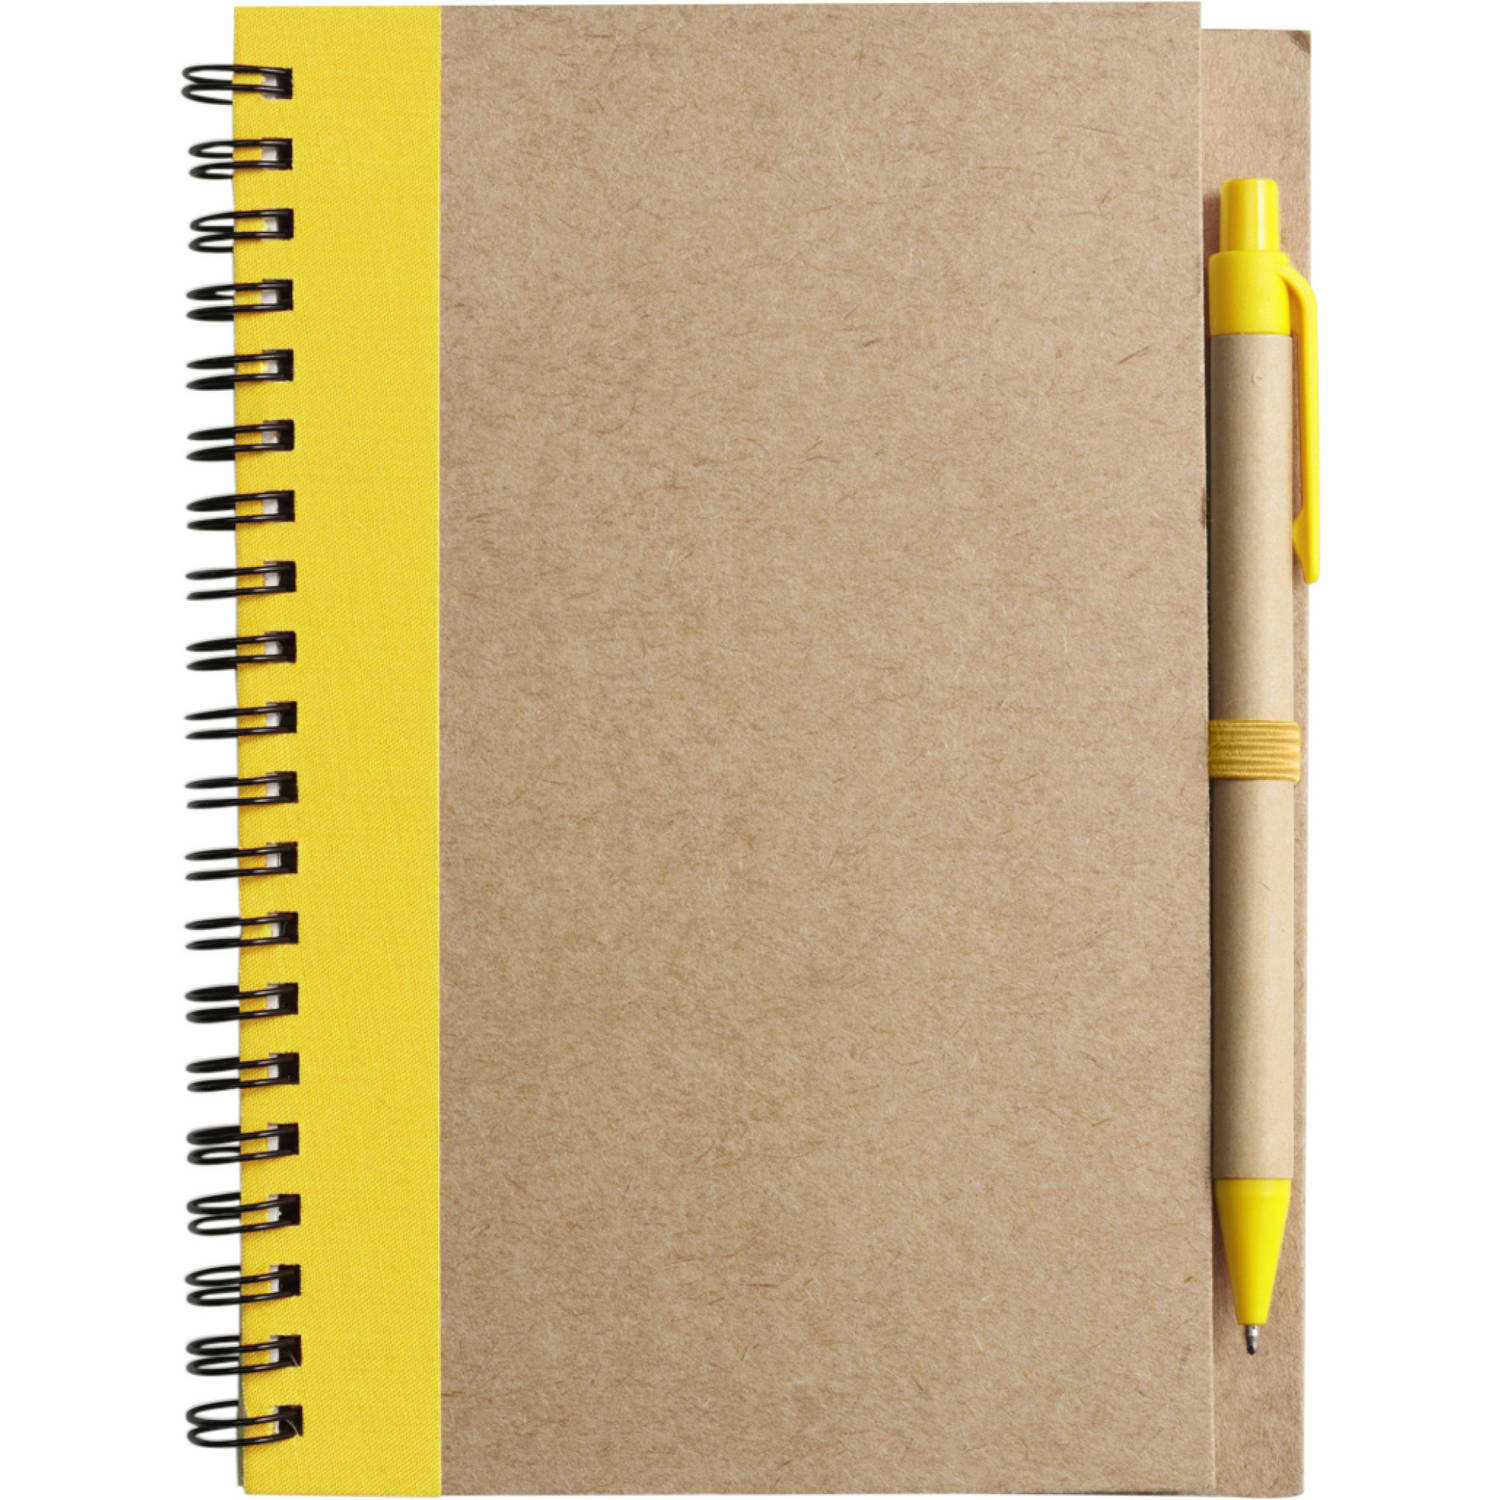 Notitie-opschrijf boekje met balpen harde kaft beige-geel 18x13cm 60blz gelinieerd Notitieboek